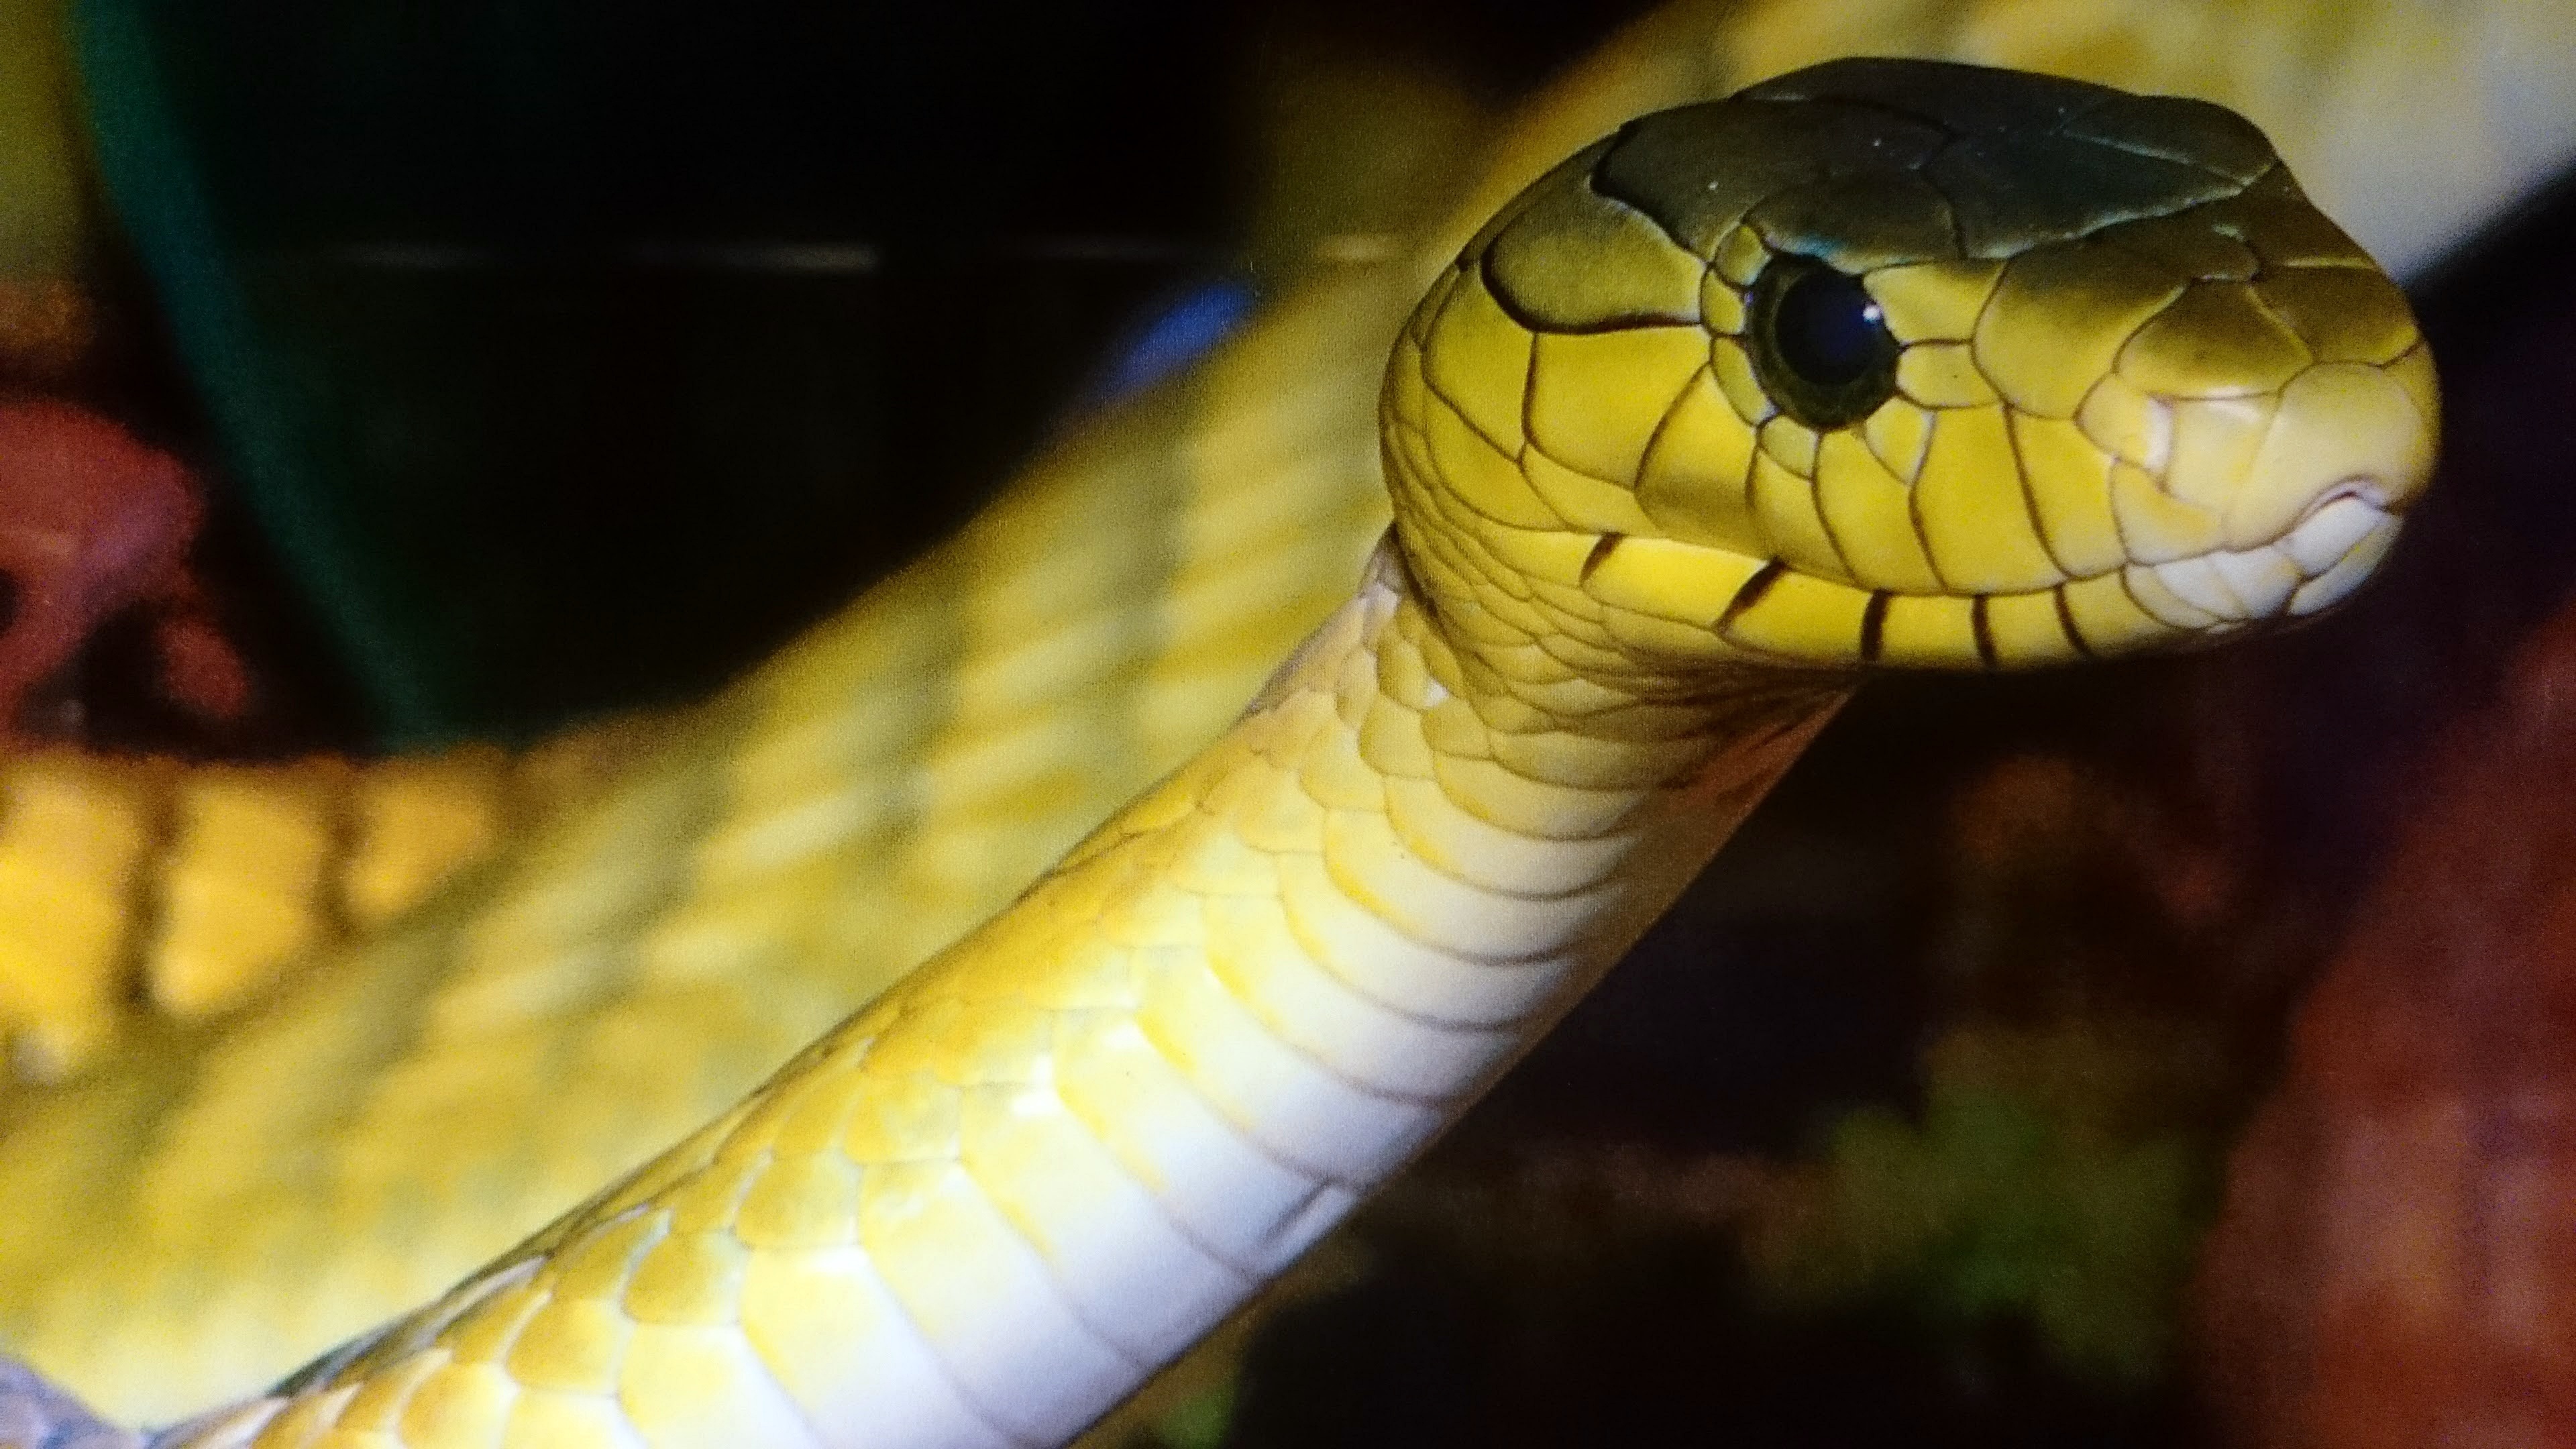 Змея желто зеленая гадюка